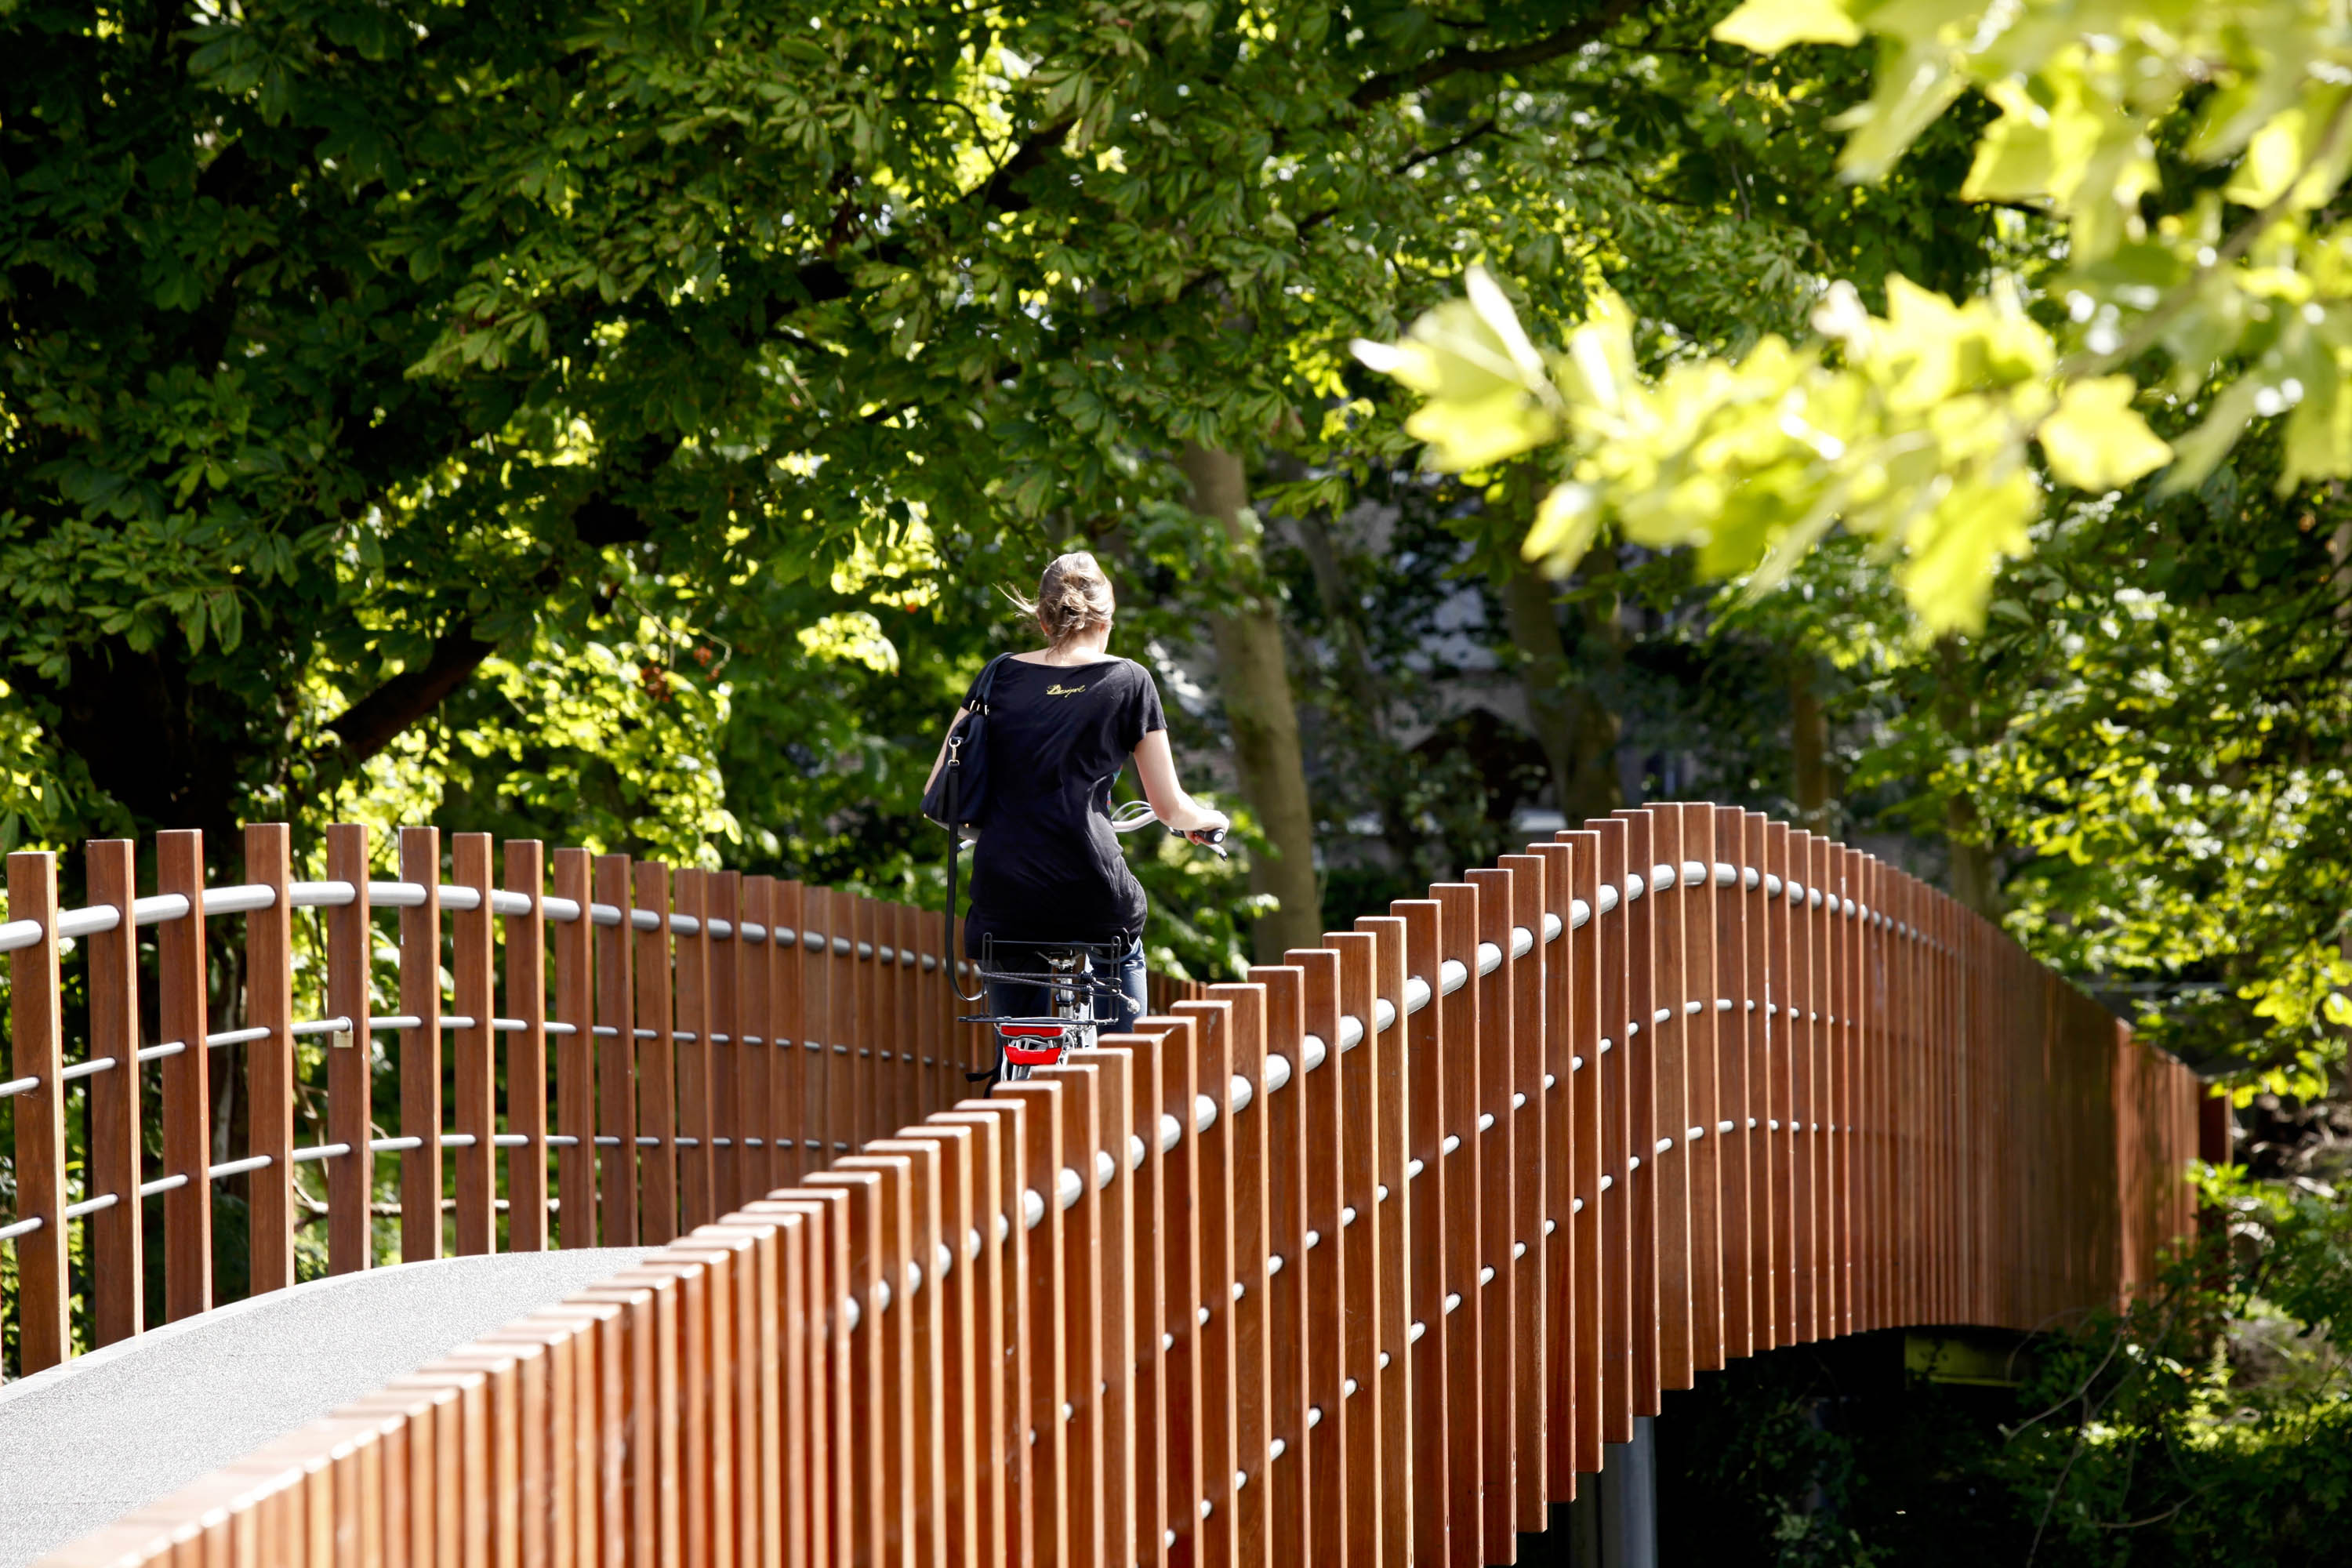 footbridge with wooden railing Bureau Stoep